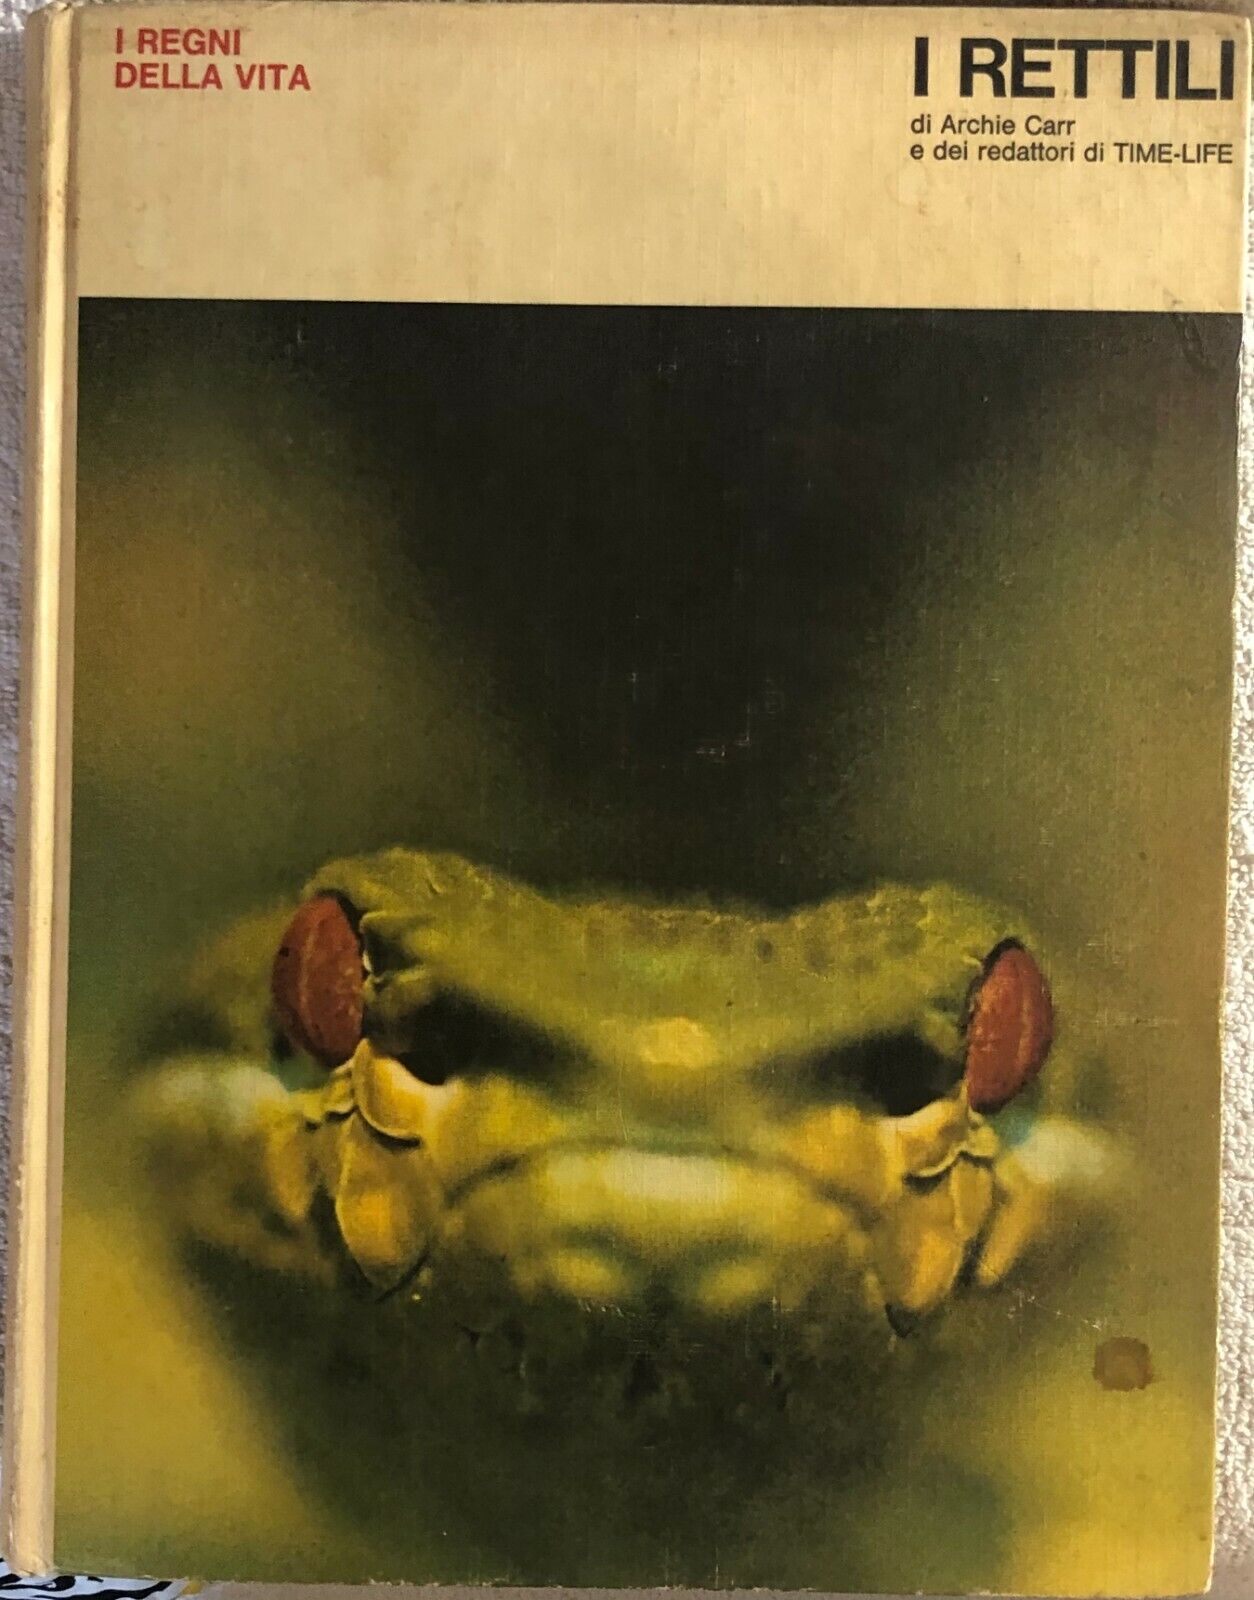 I rettili di Archie Carr,  1974,  Arnoldo Mondadori Editore